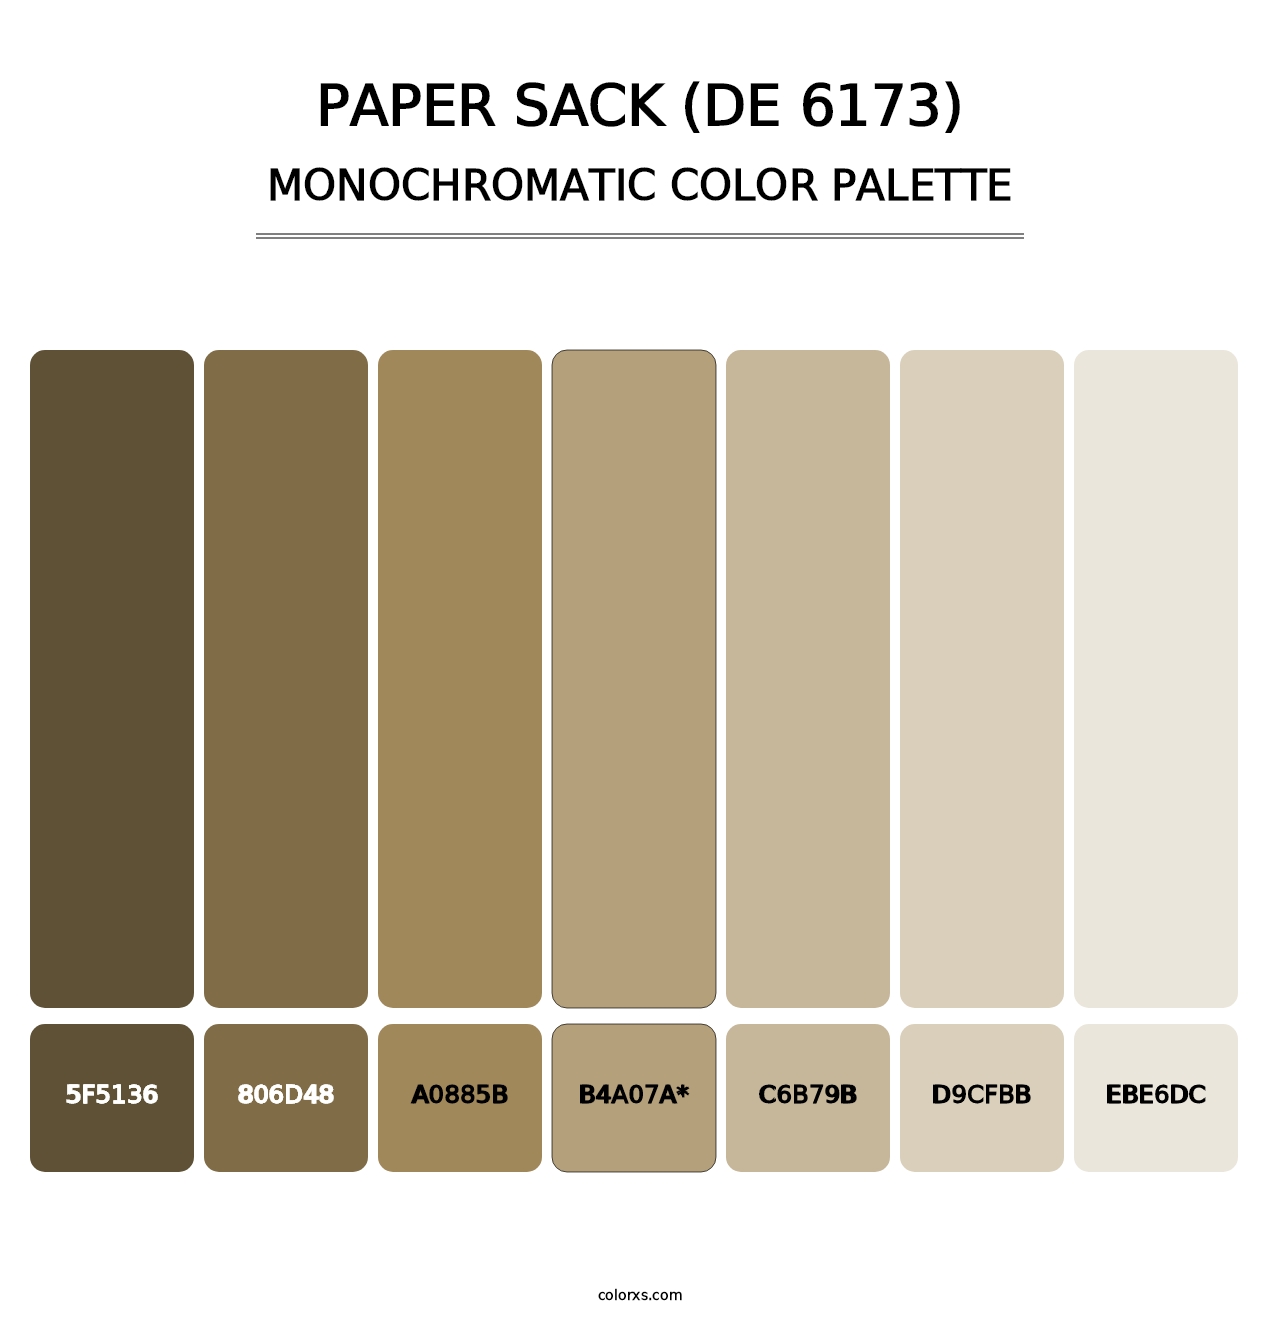 Paper Sack (DE 6173) - Monochromatic Color Palette